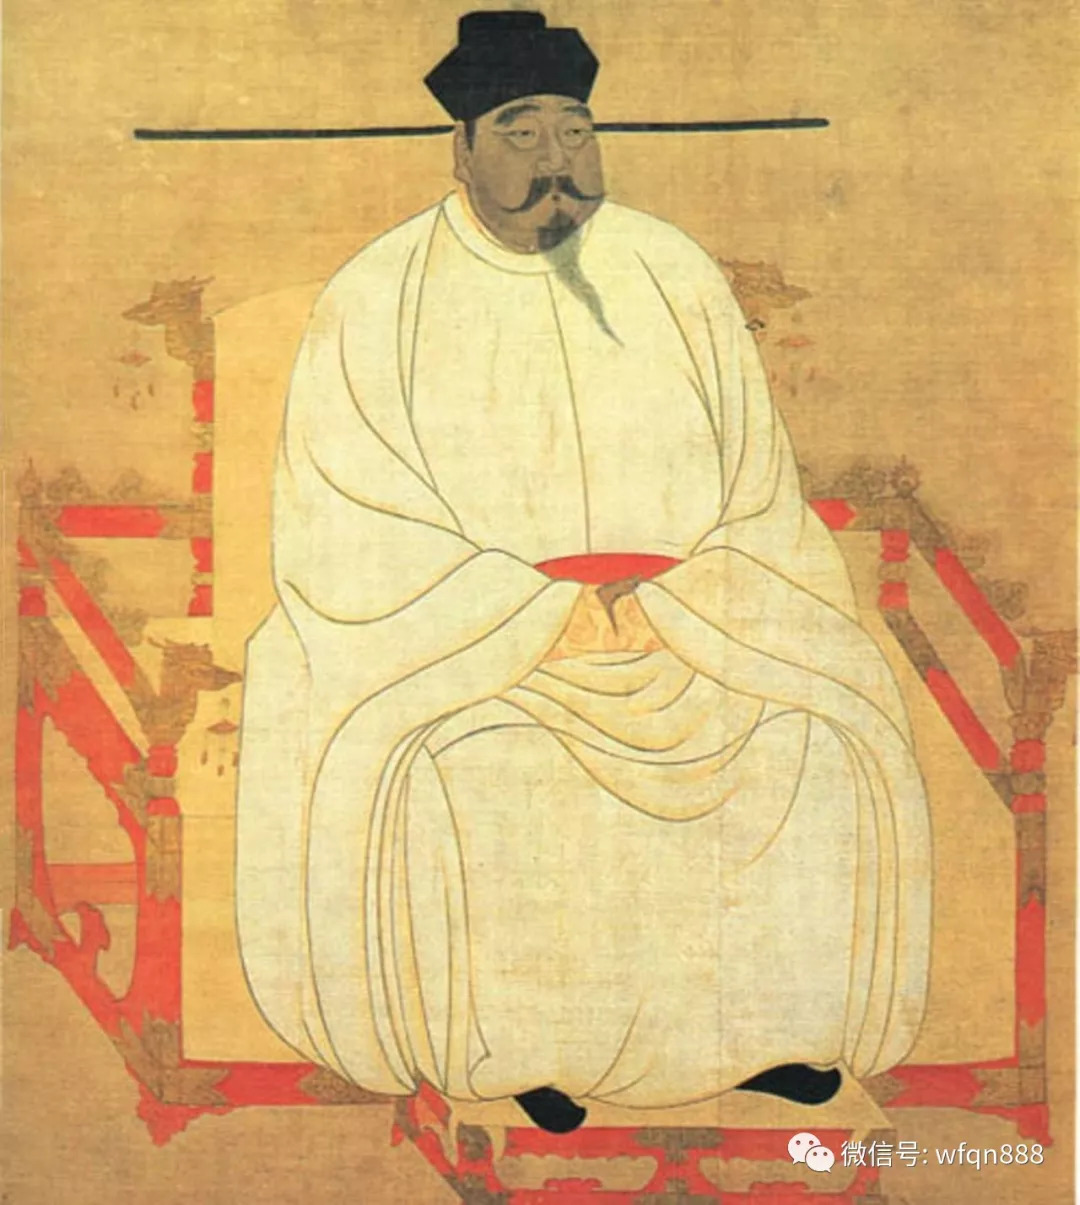 元朝的末代皇帝真是宋朝皇帝的后裔?这位元朝文人说是的